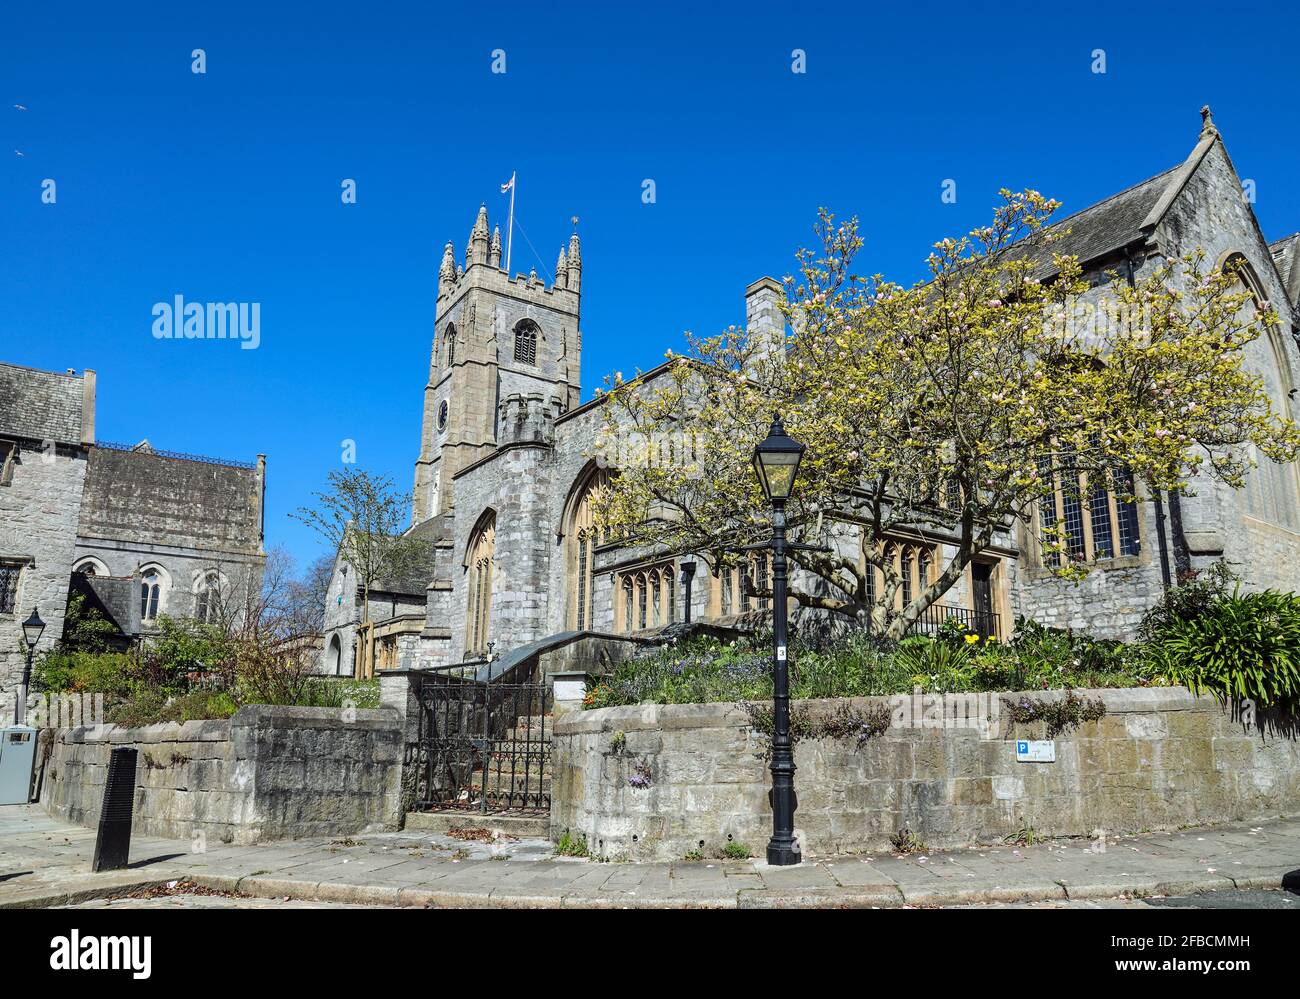 Die Minster Church of St Andrew’s in Plymouth. Während des 2. Weltkrieges bombardiert, wurde es 1951 wiedergeboren. Ein Resurgam 60-Appell zielt darauf ab, Mittel für dringende Renovierungen zu beschaffen Stockfoto